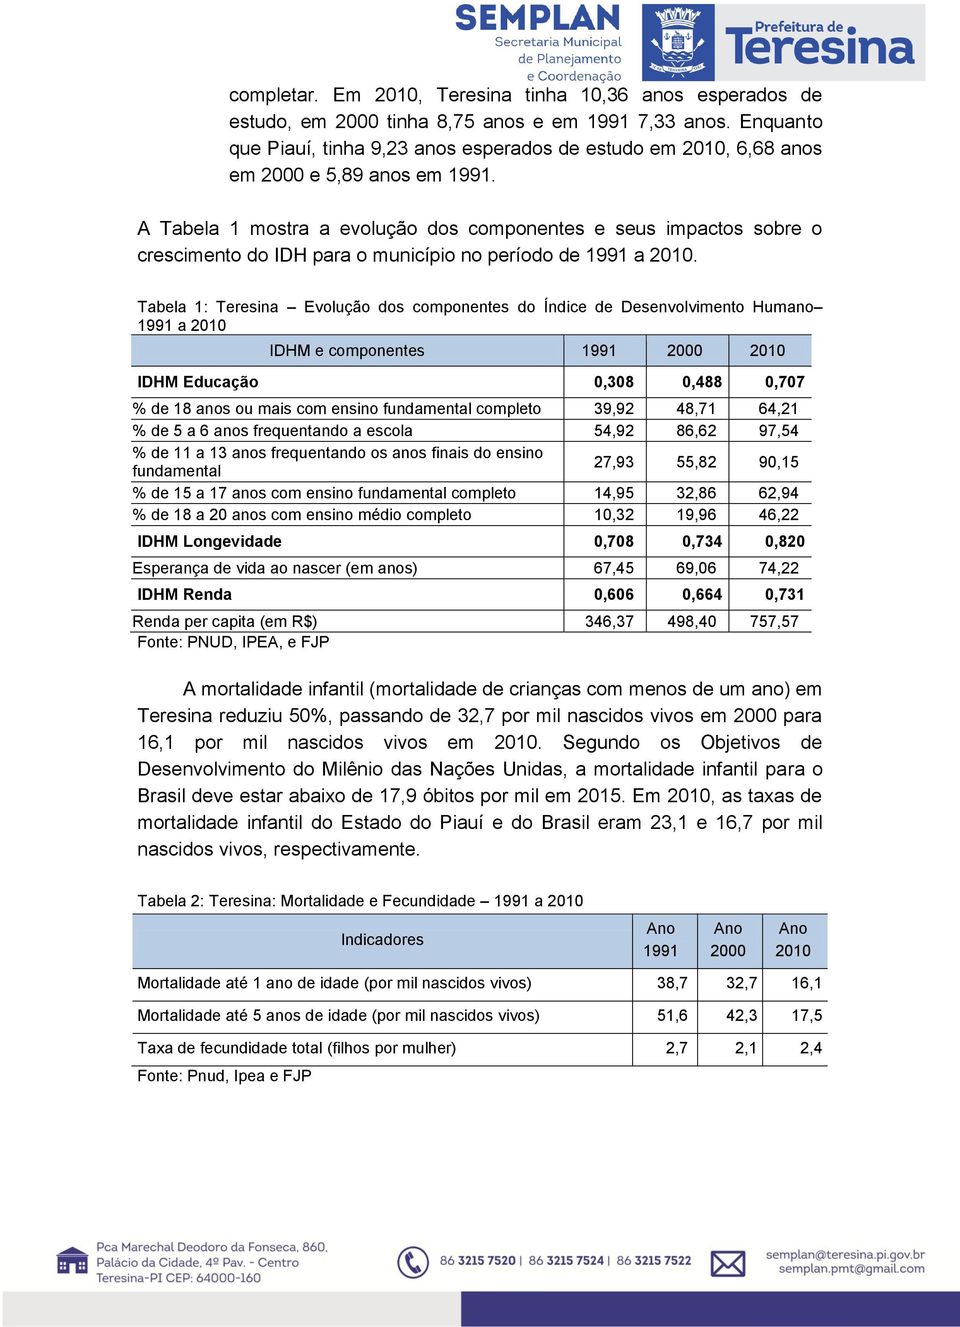 A Tabela 1 mostra a evolução dos componentes e seus impactos sobre o crescimento do IDH para o município no período de 1991 a 2010.